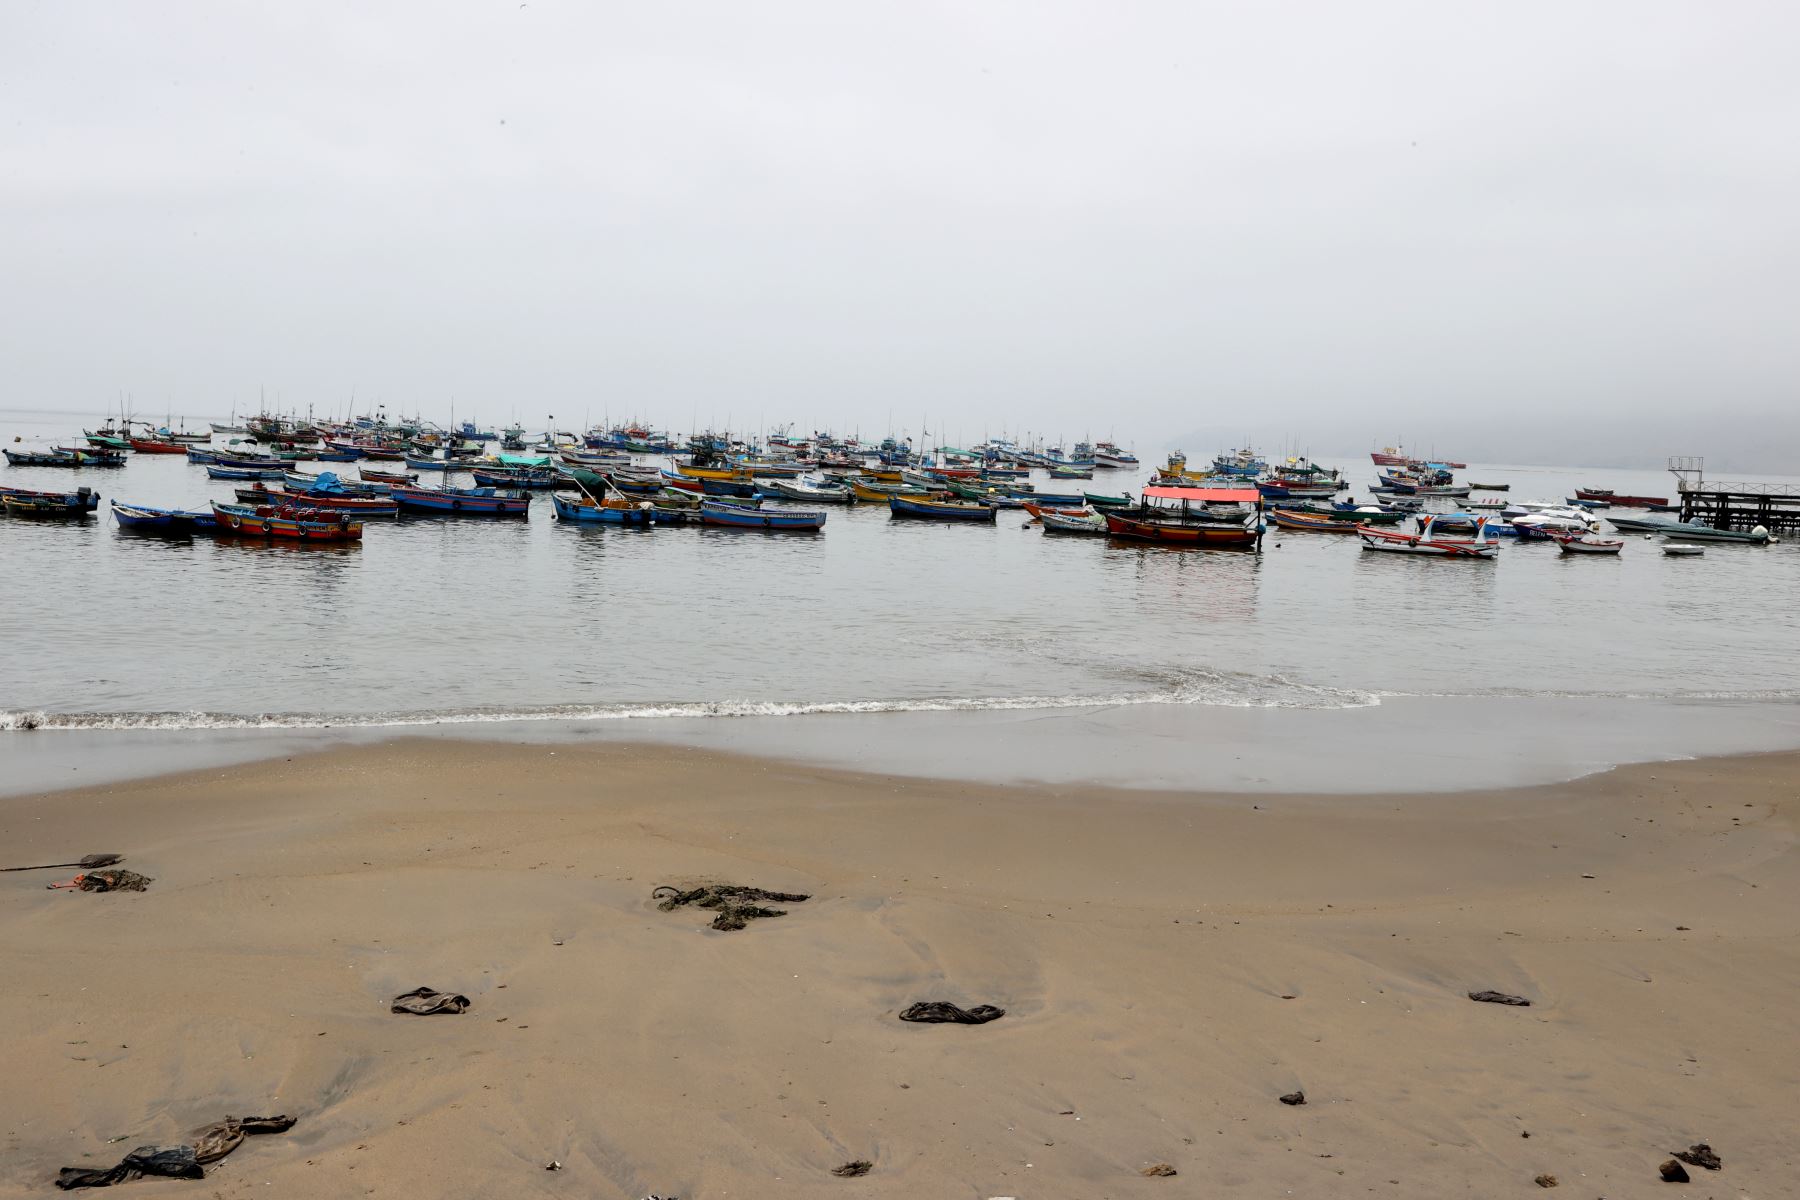 Una gran cantidad de lanchas pesqueras continúan varadas en la playa Ancón, debido al derrame de petróleo ocurrido el sábado 15 de enero ocasionado por la empresa Repsol y que hasta ahora ha contaminado varias playas del litoral peruano. Foto: ANDINA/Vidal Tarqui